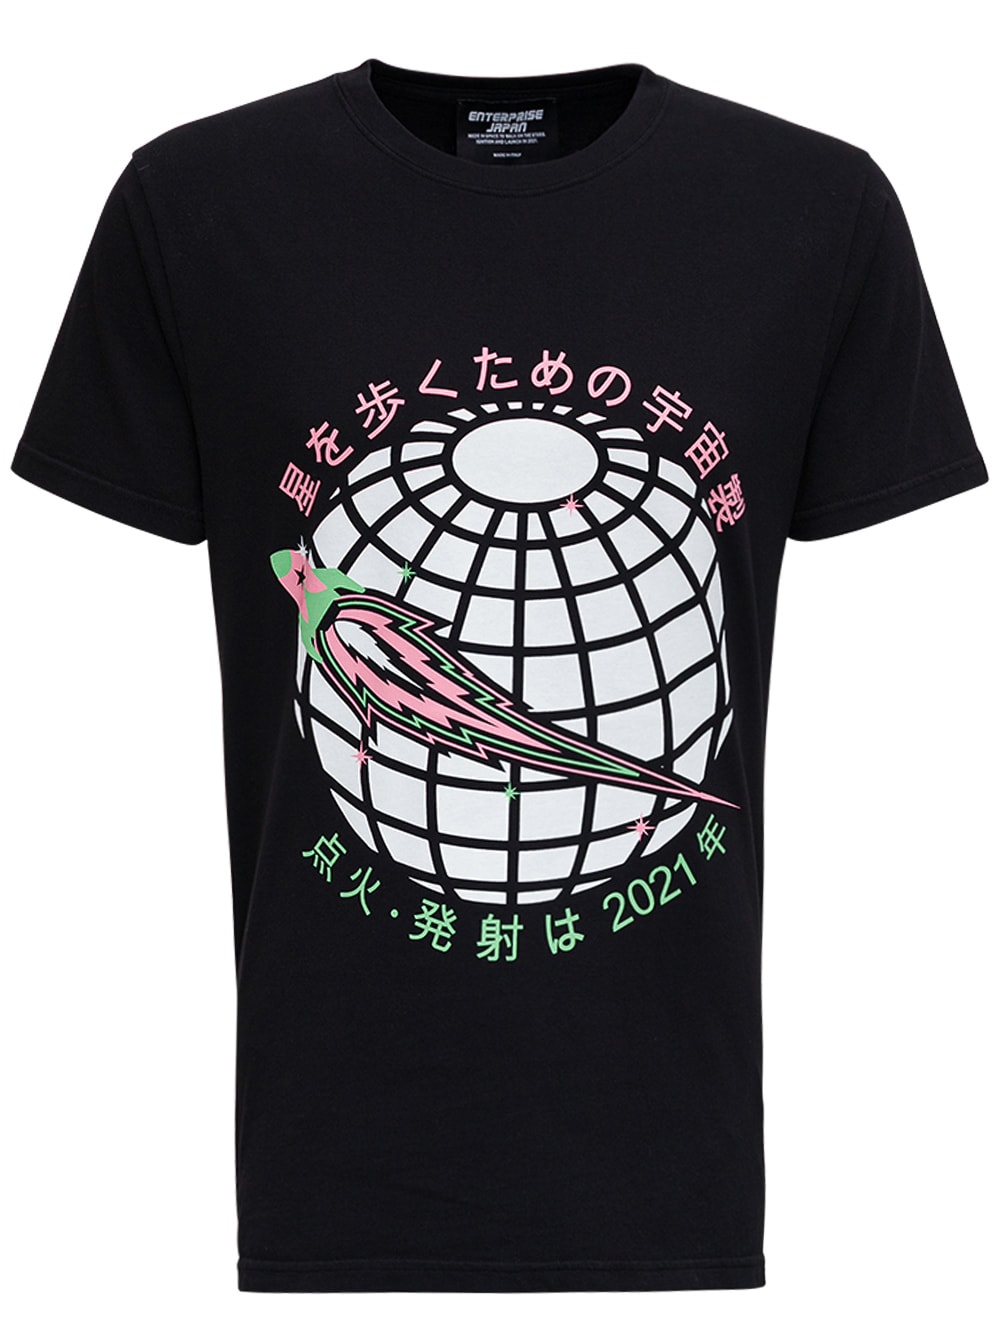 Enterprise Japan Black Cotton T-shirt With Print